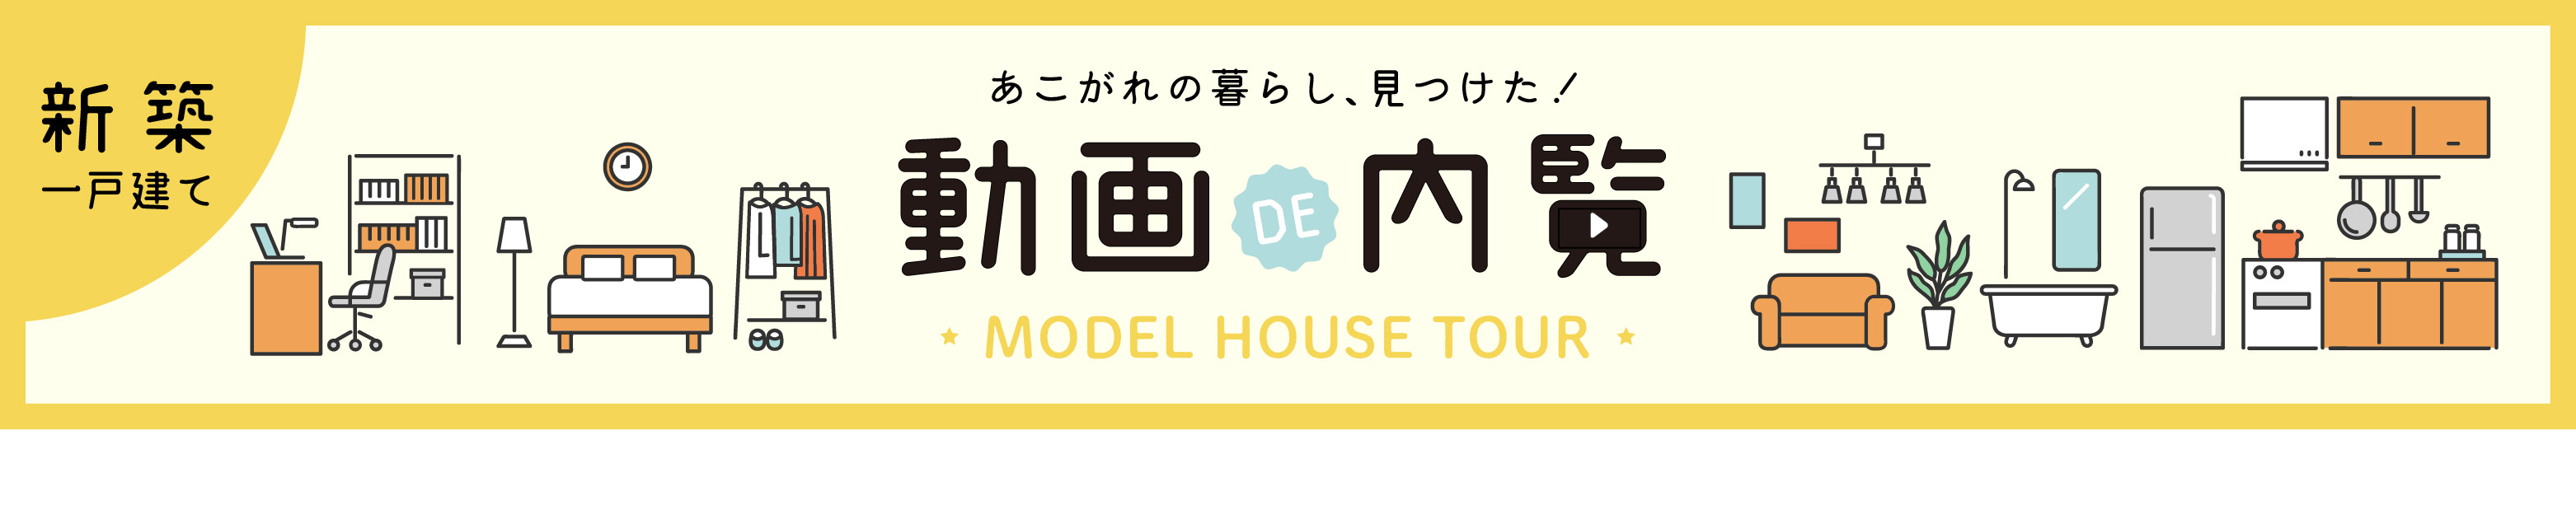 【新築一戸建て】動画で内覧 MODEL HOUSE TOUR